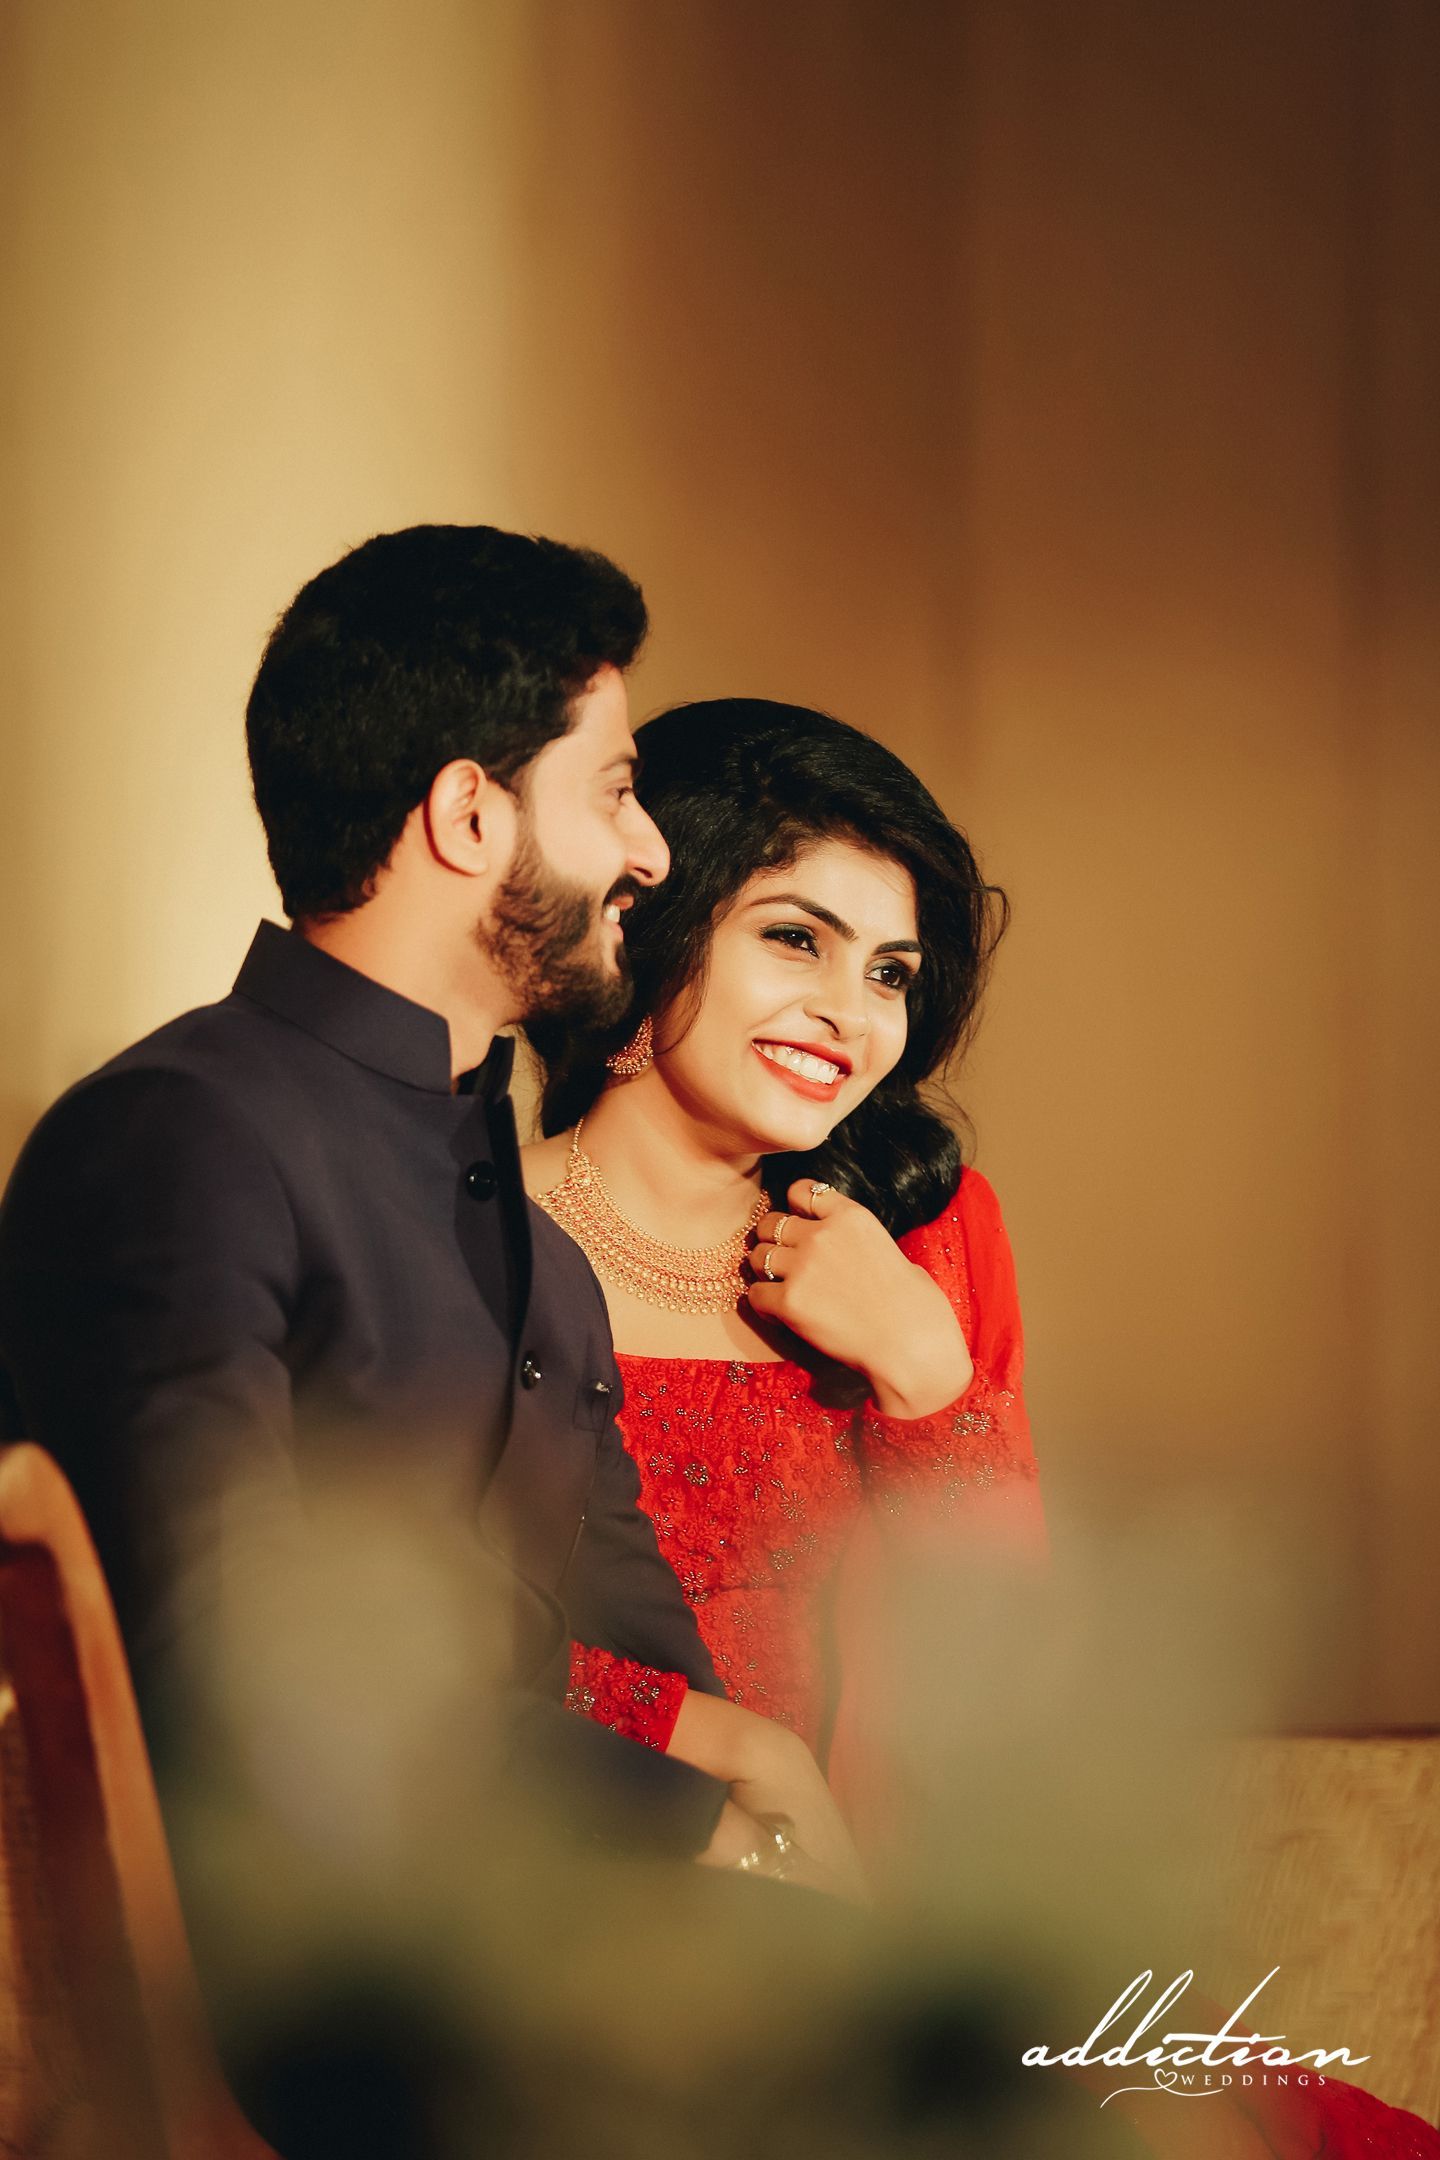 Wedding Photography Kerala Cute Couple. Kerala wedding photography, Wedding photography, Wedding couple photo